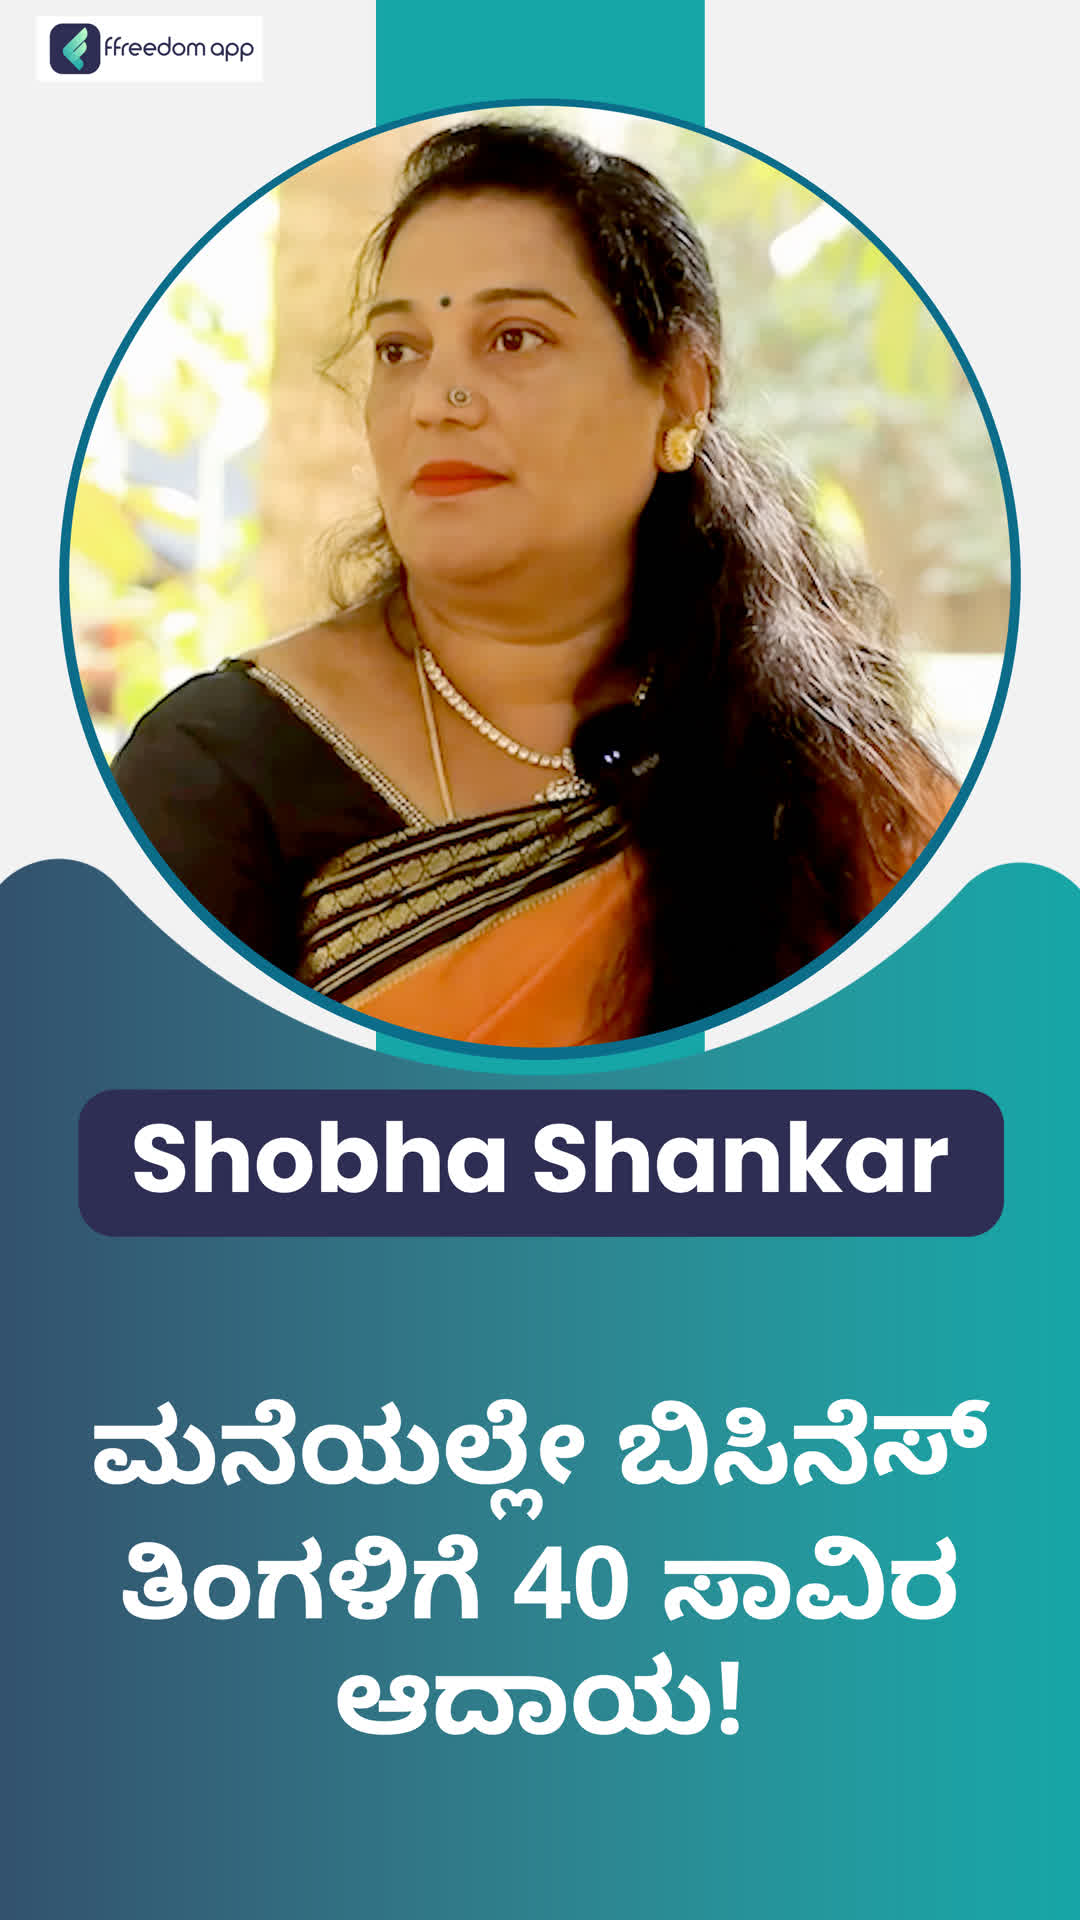 Shobha's Honest Review of ffreedom app - Bengaluru City ,Karnataka